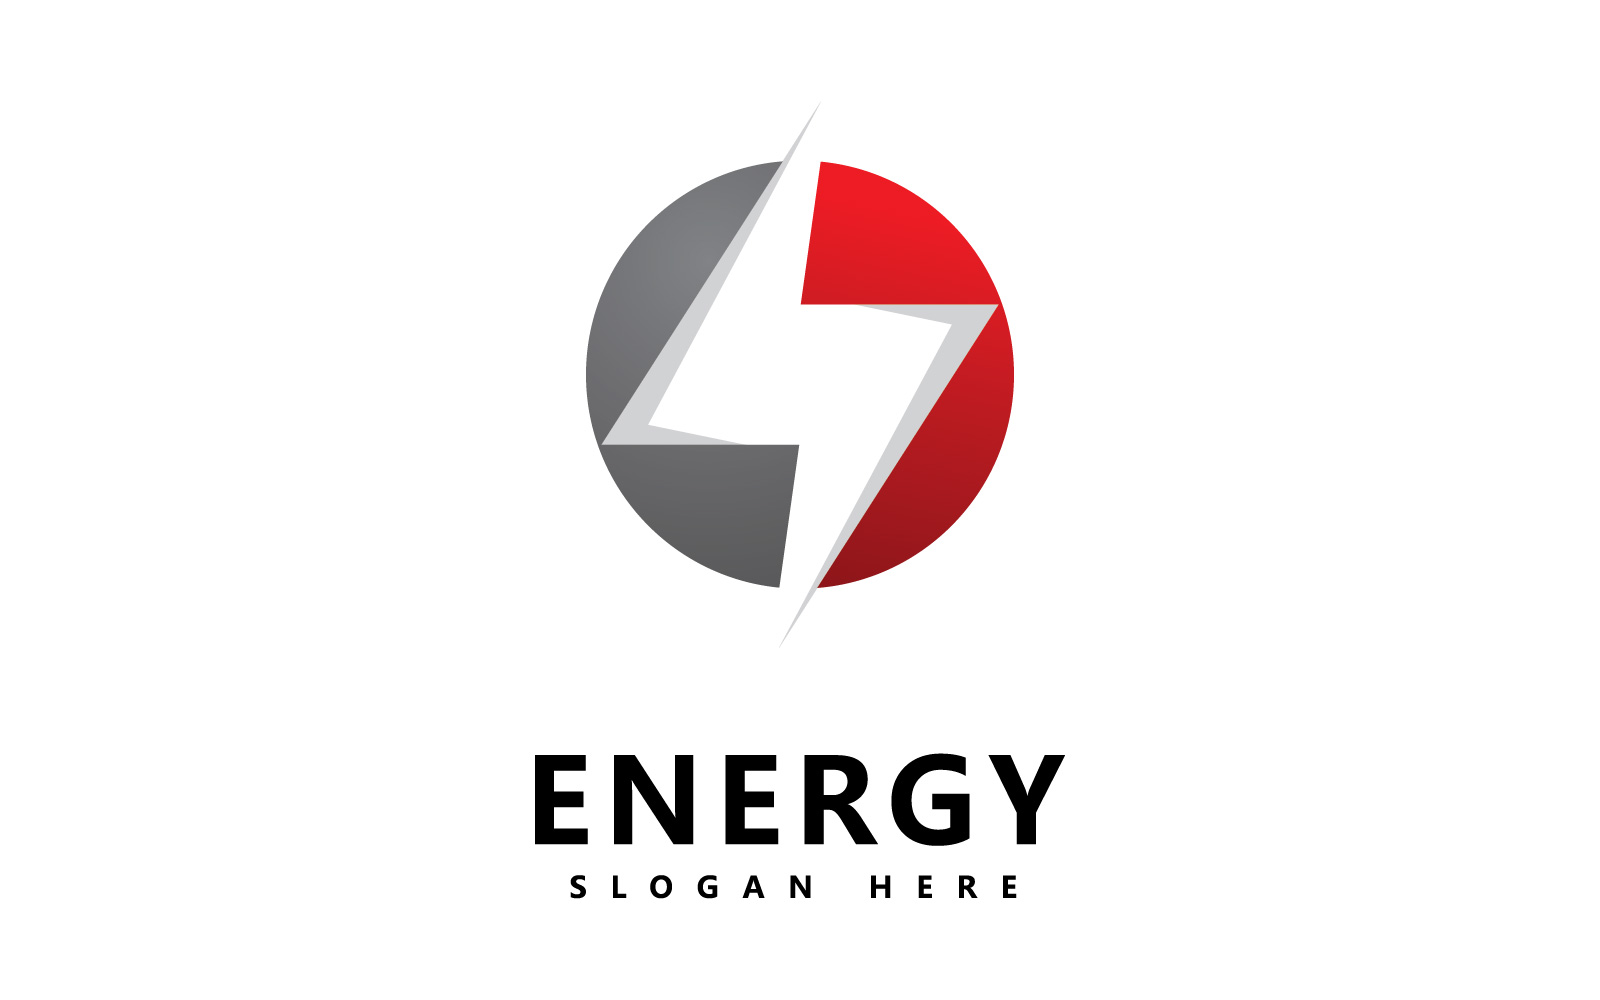 Energy logo icon  template vector design V1